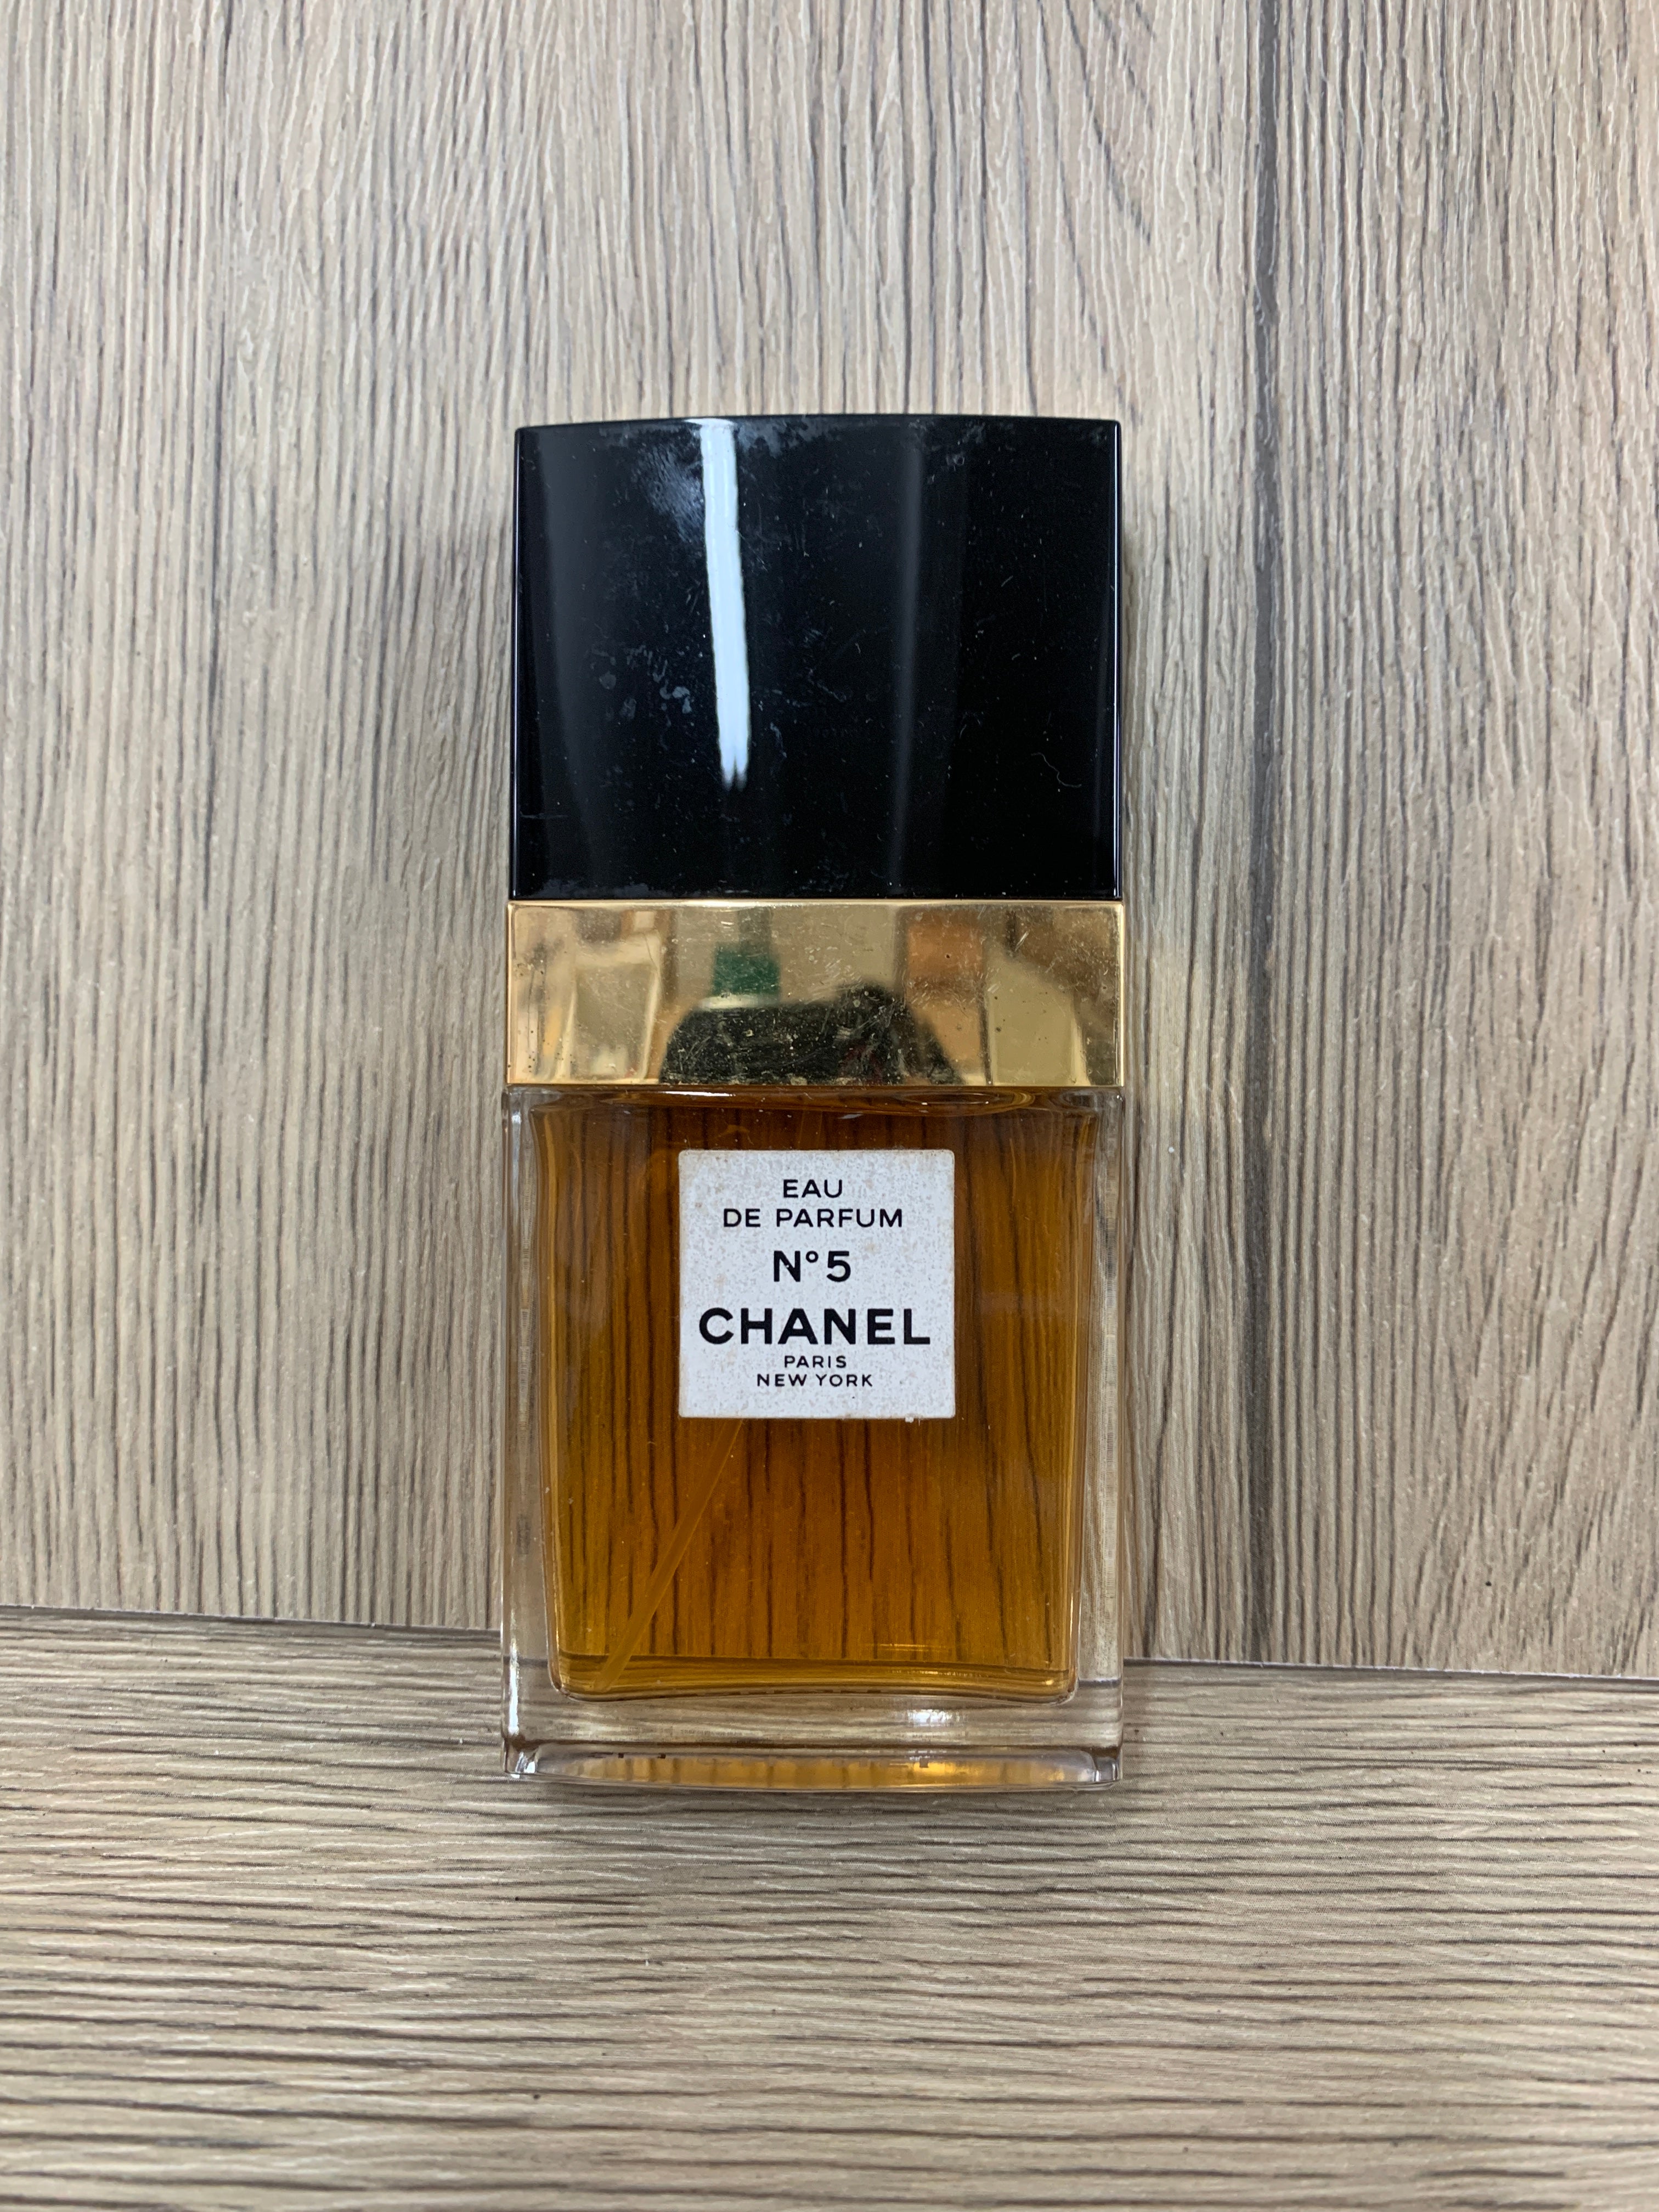 N°5 by Chanel (Eau de Parfum) » Reviews & Perfume Facts